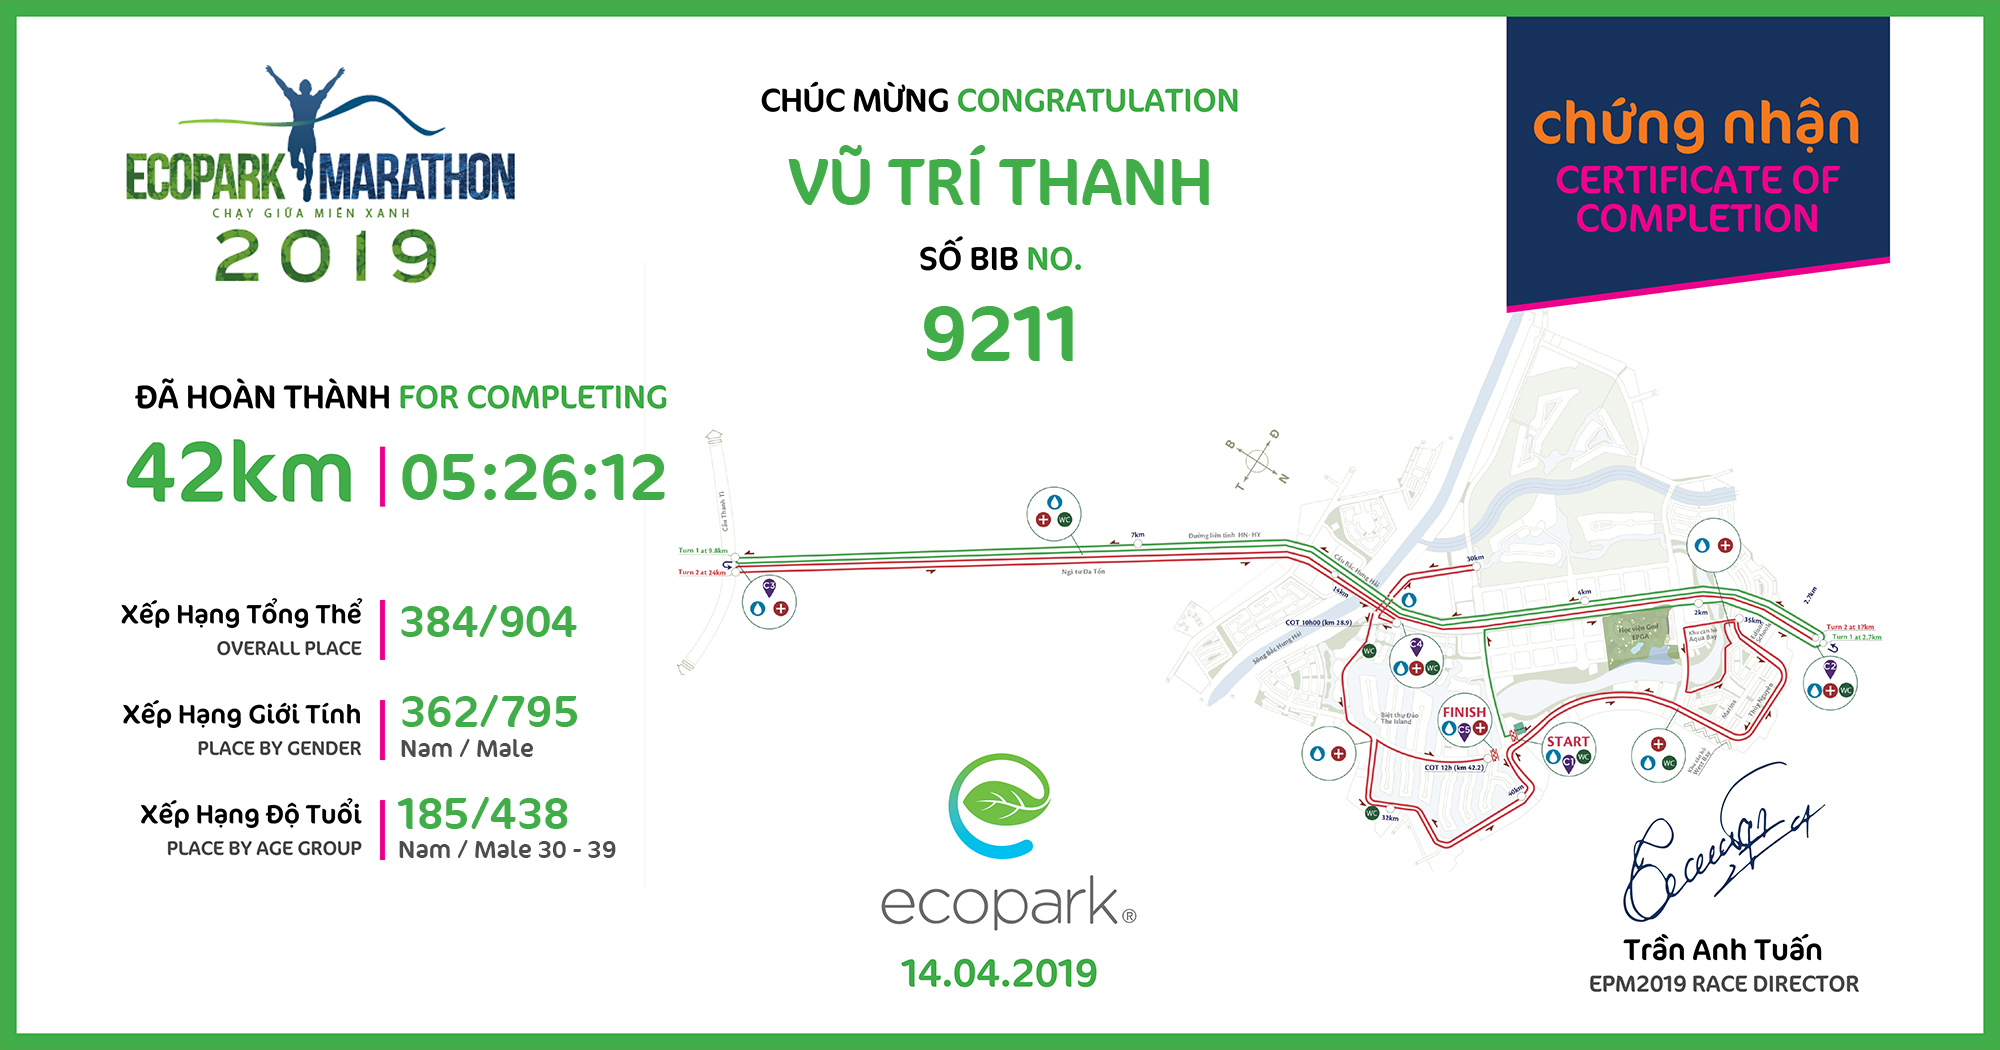 9211 - Vũ Trí Thanh